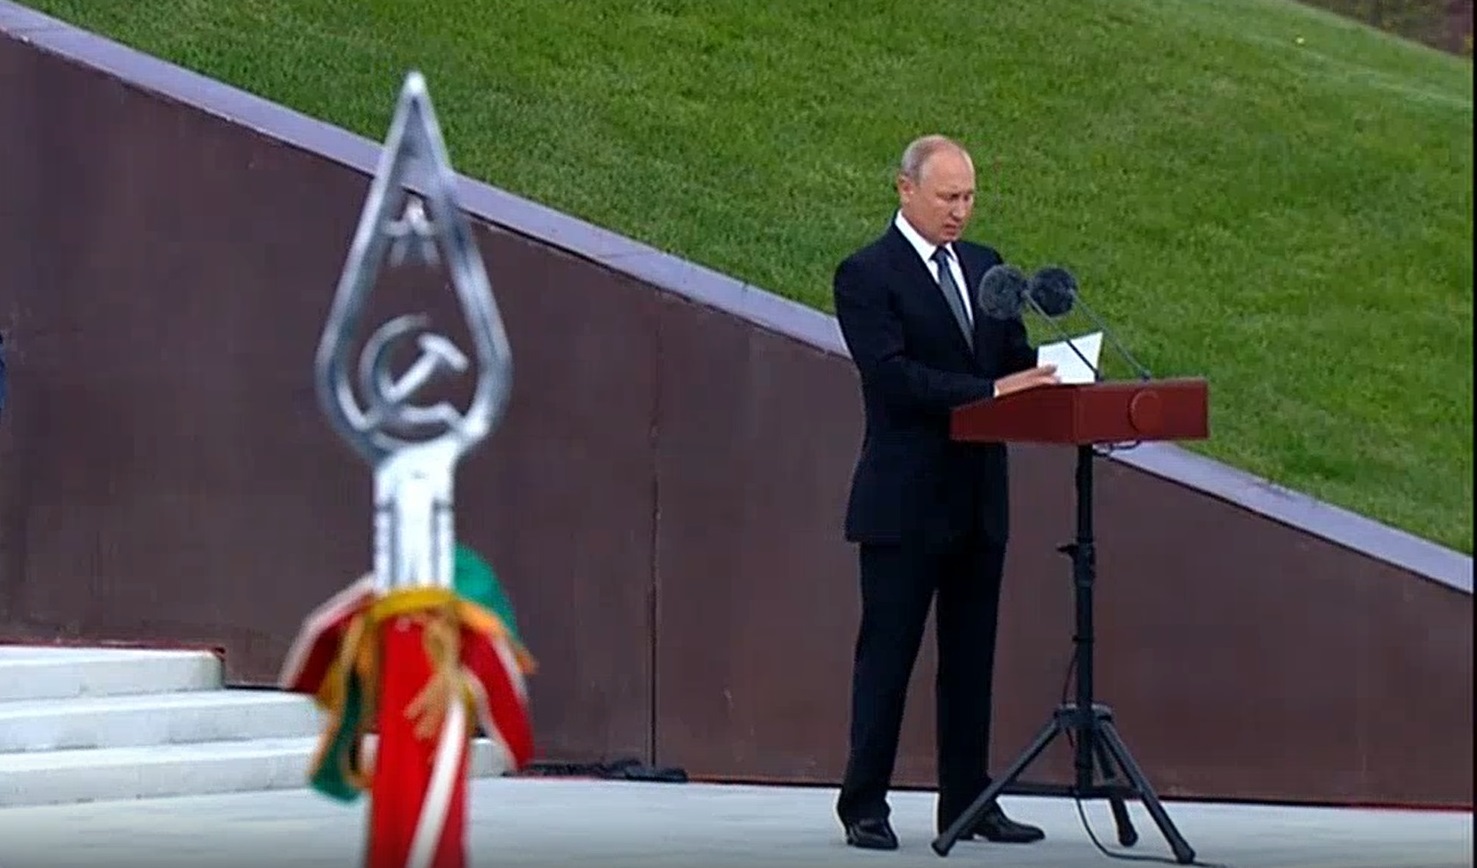 Президент России Владимир Путин выступил с обращением к россиянам